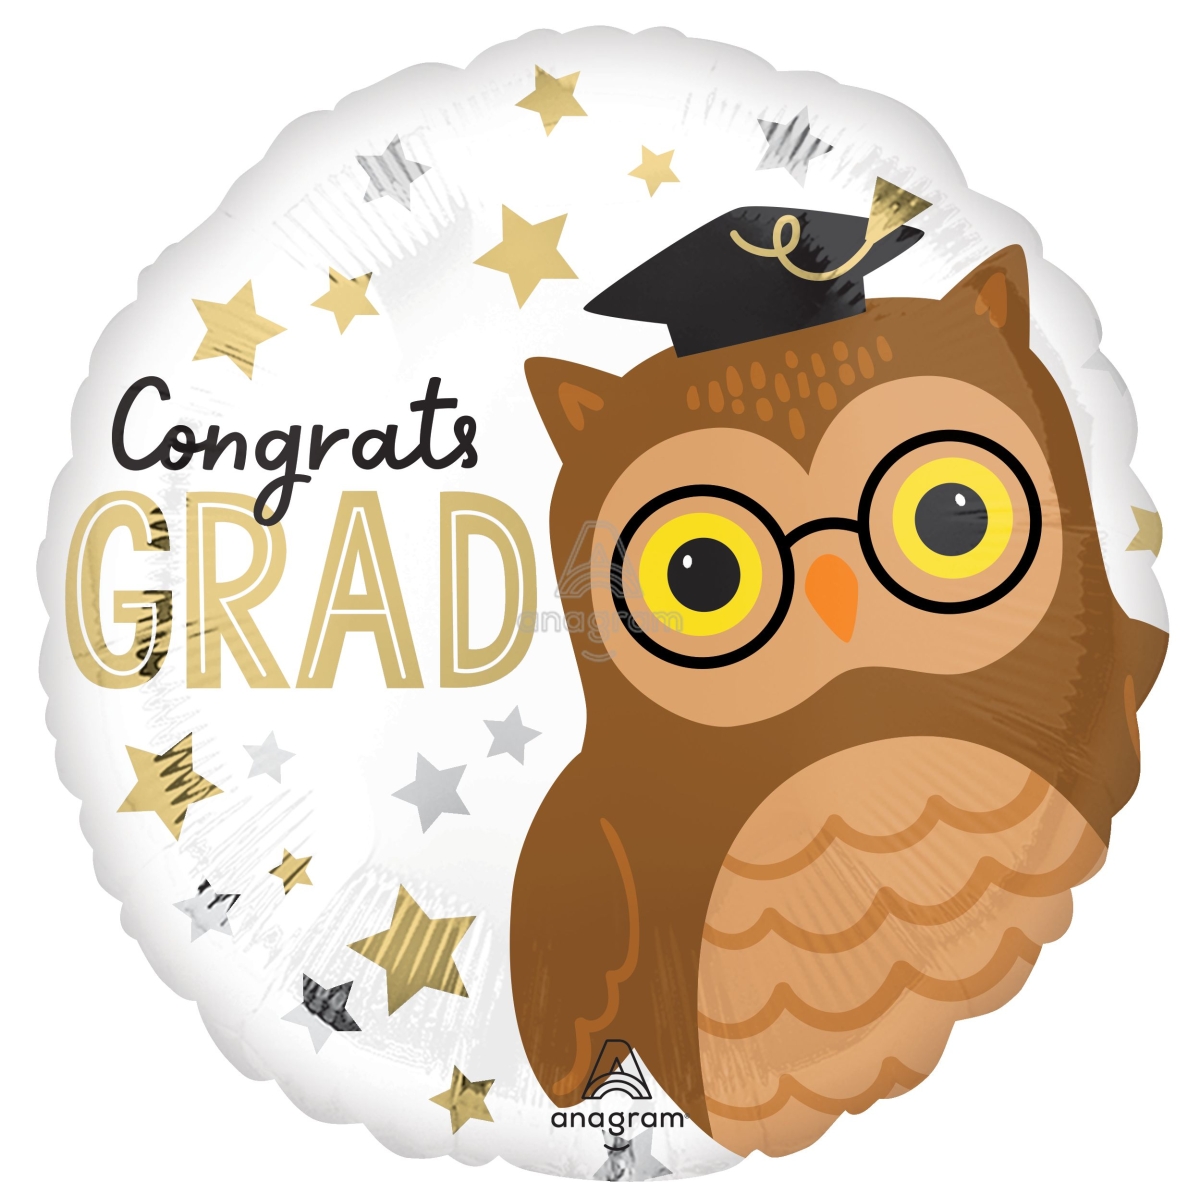 18" Congrats Grad Owl balloon